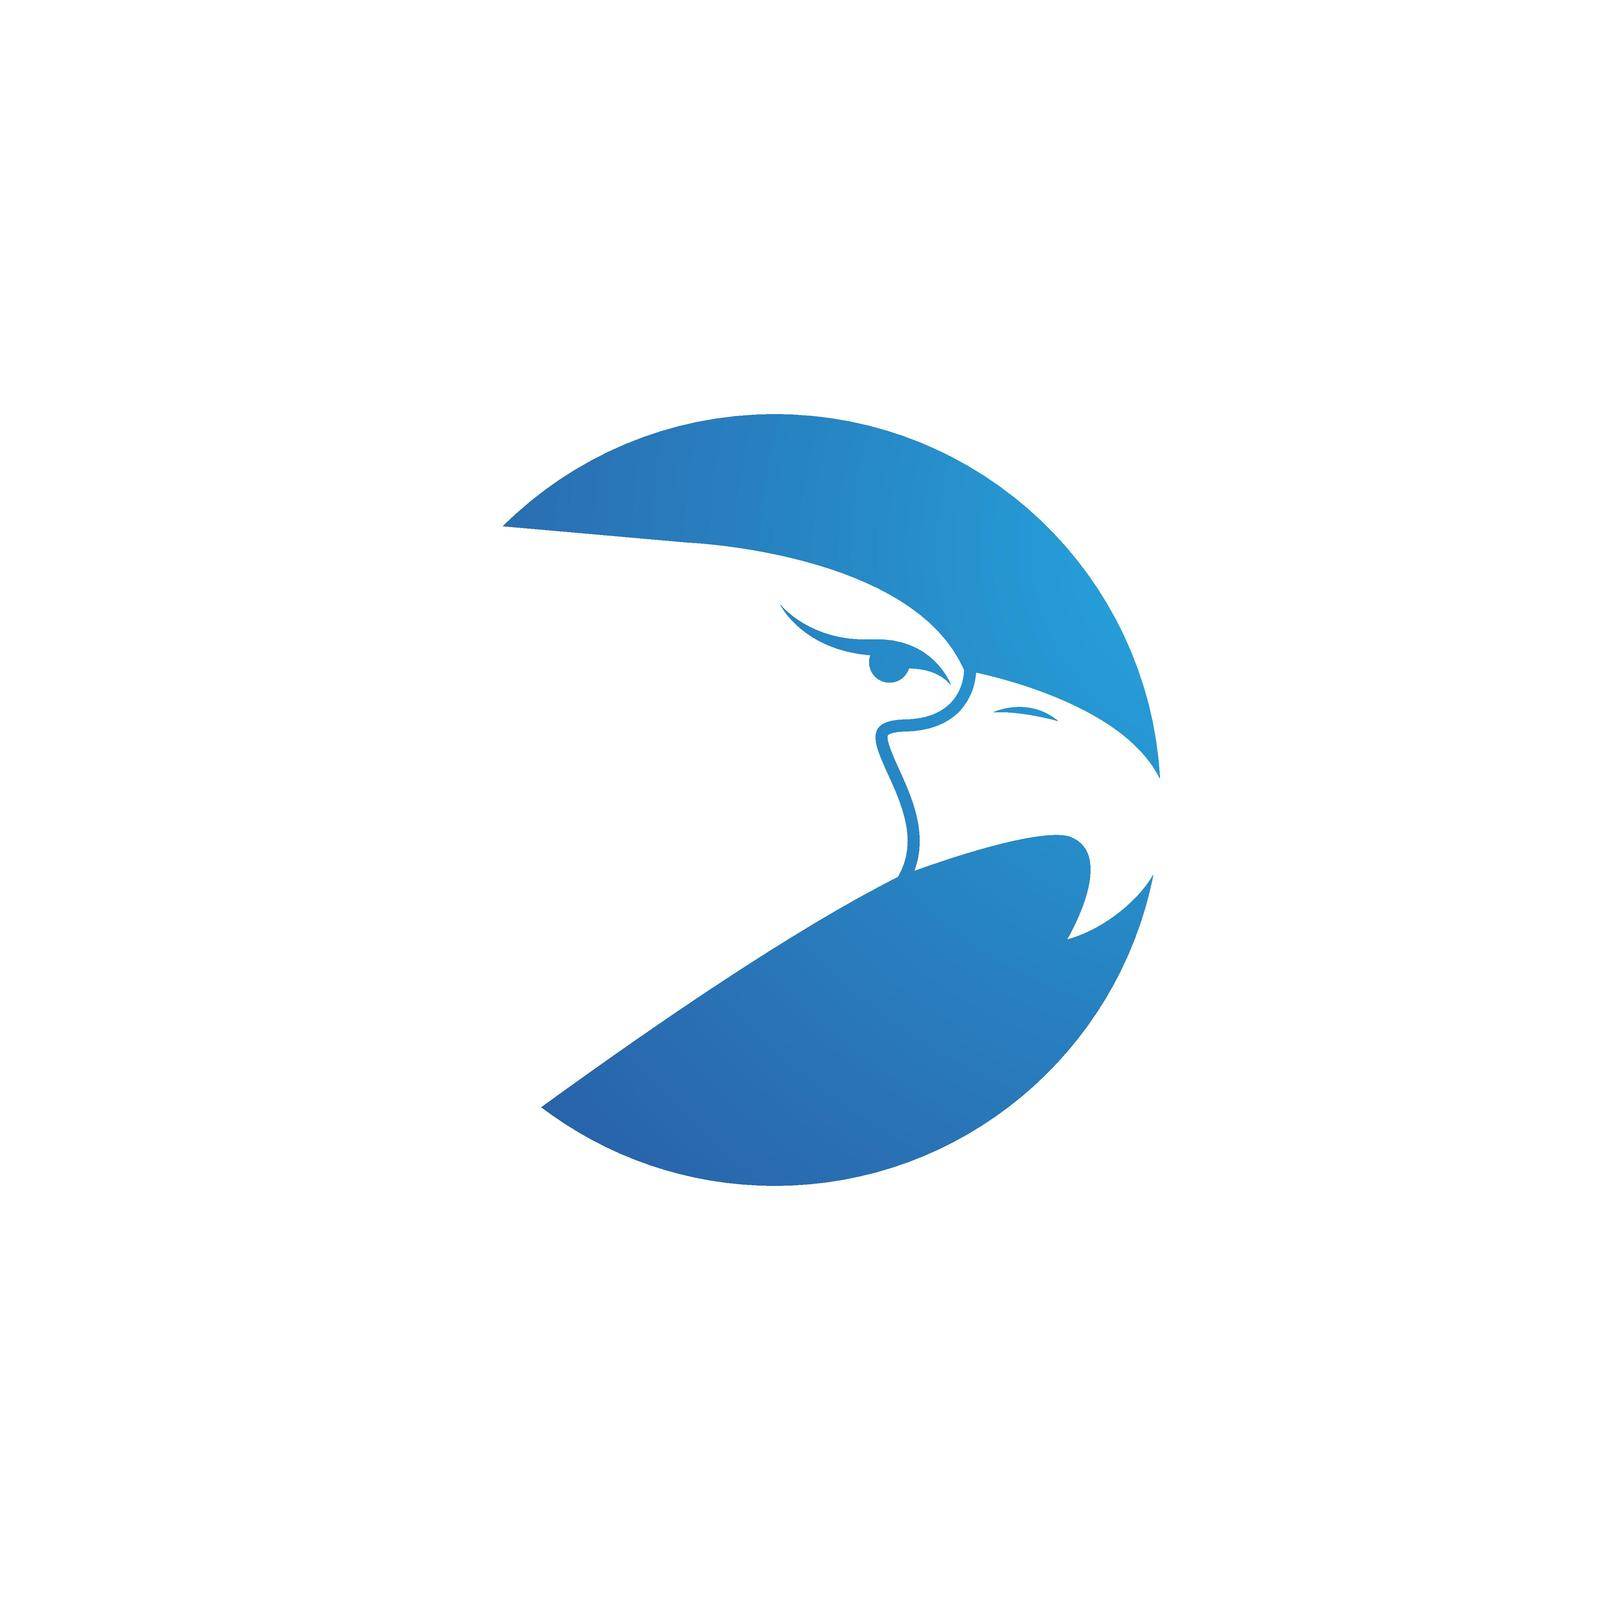 Falcon Eagle Bird illustration Logo Template vector